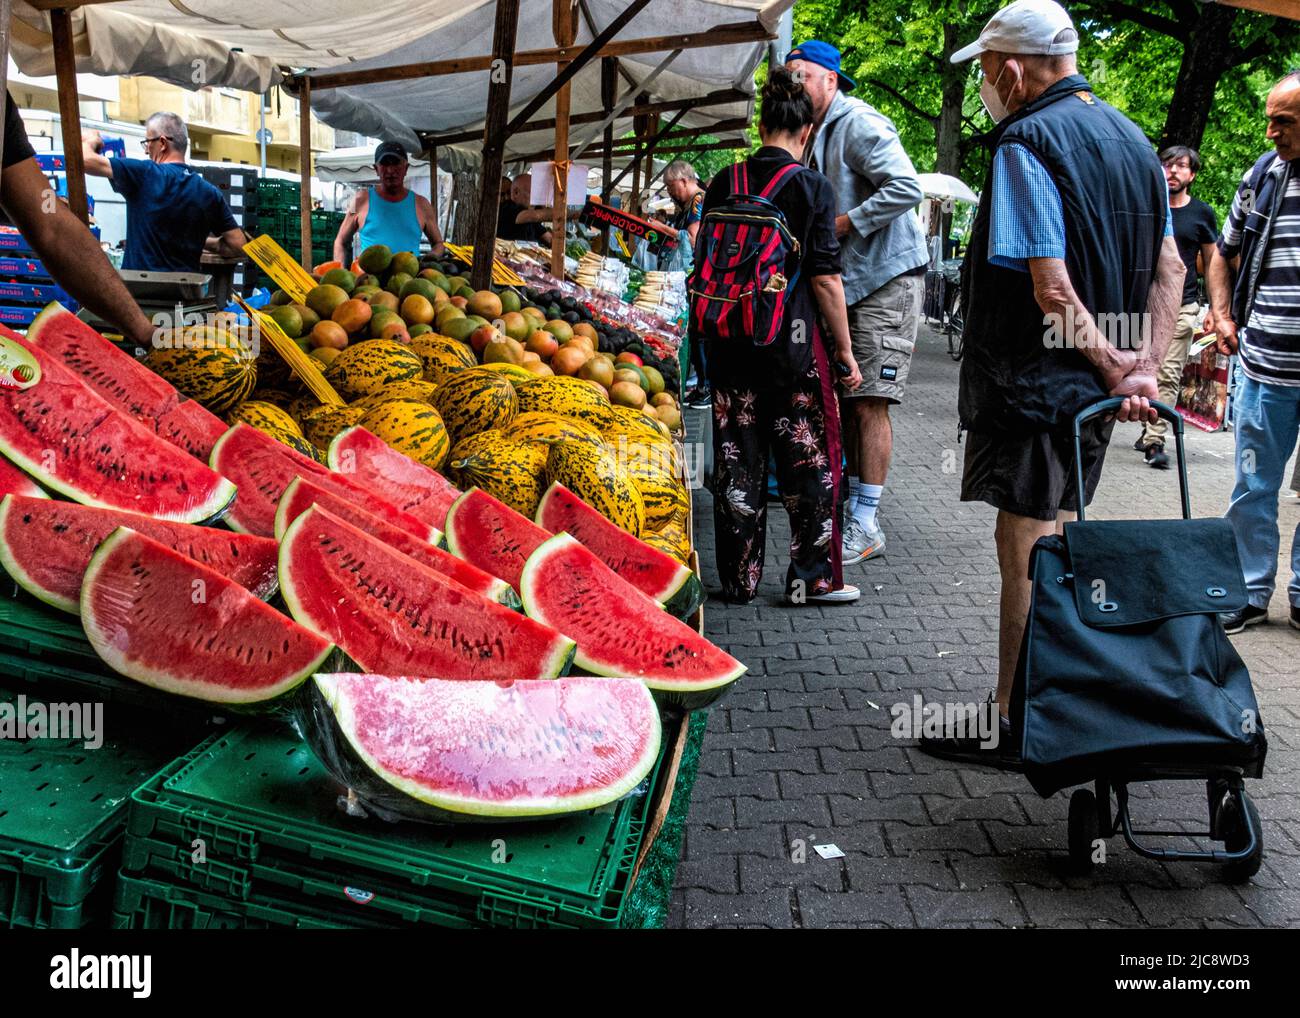 Mercato turco con bancarelle che vendono frutta, verdura e vari altri prodotti a Maybachufer ,Neukölln,Berlino,Germania. Foto Stock